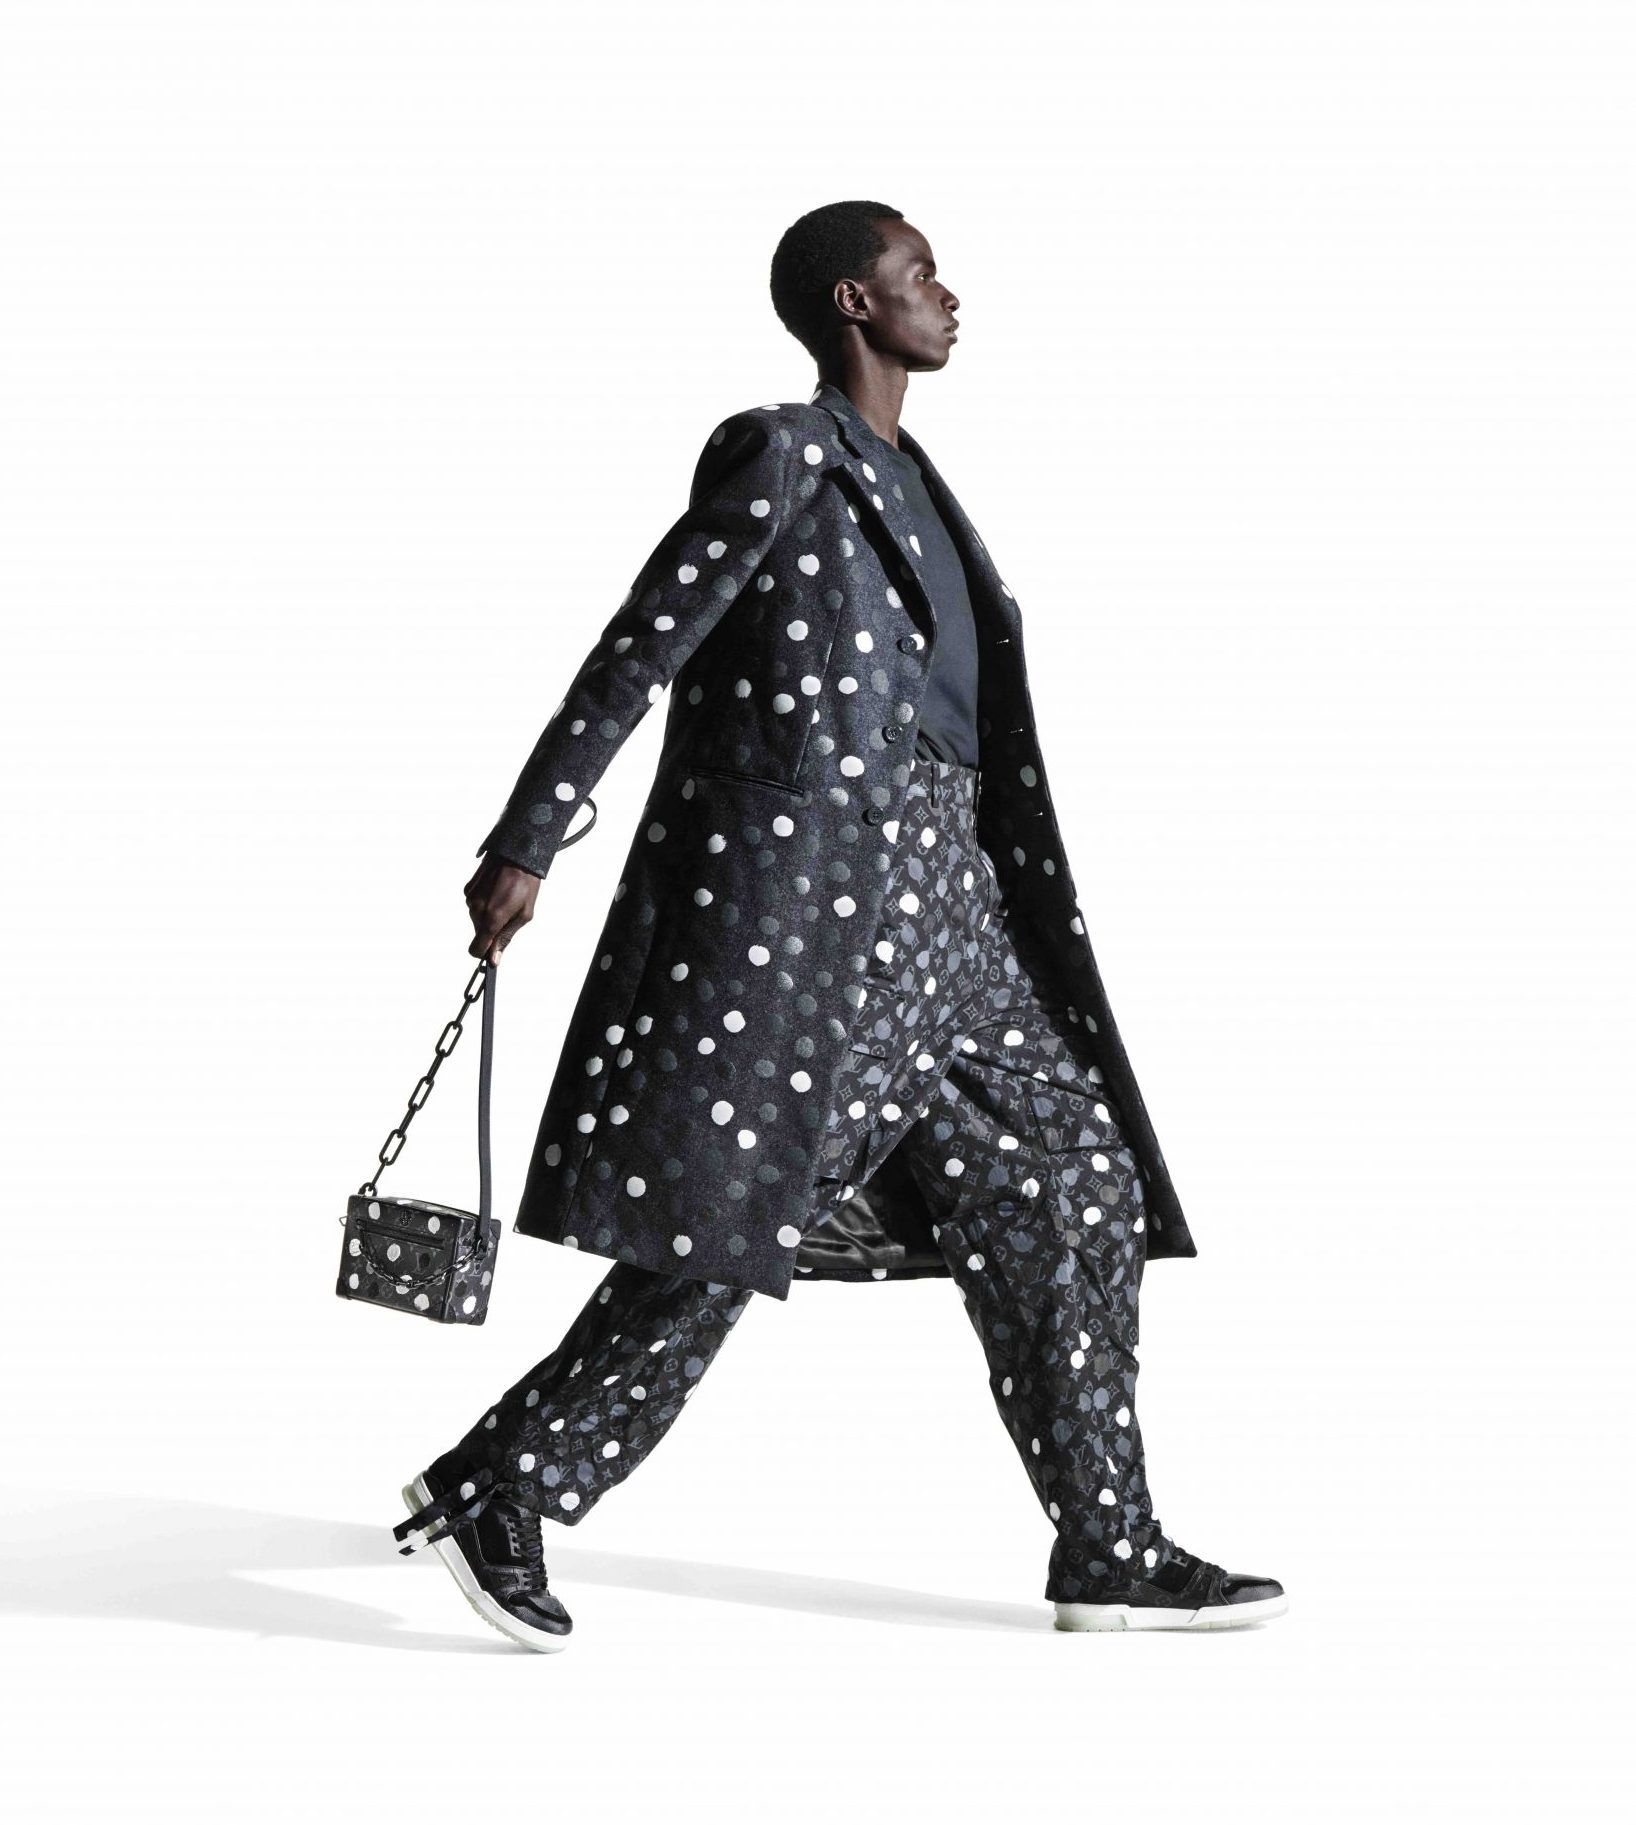 Louis Vuitton brings the art of Yayoi Kusama to Milan during men's fashion  week